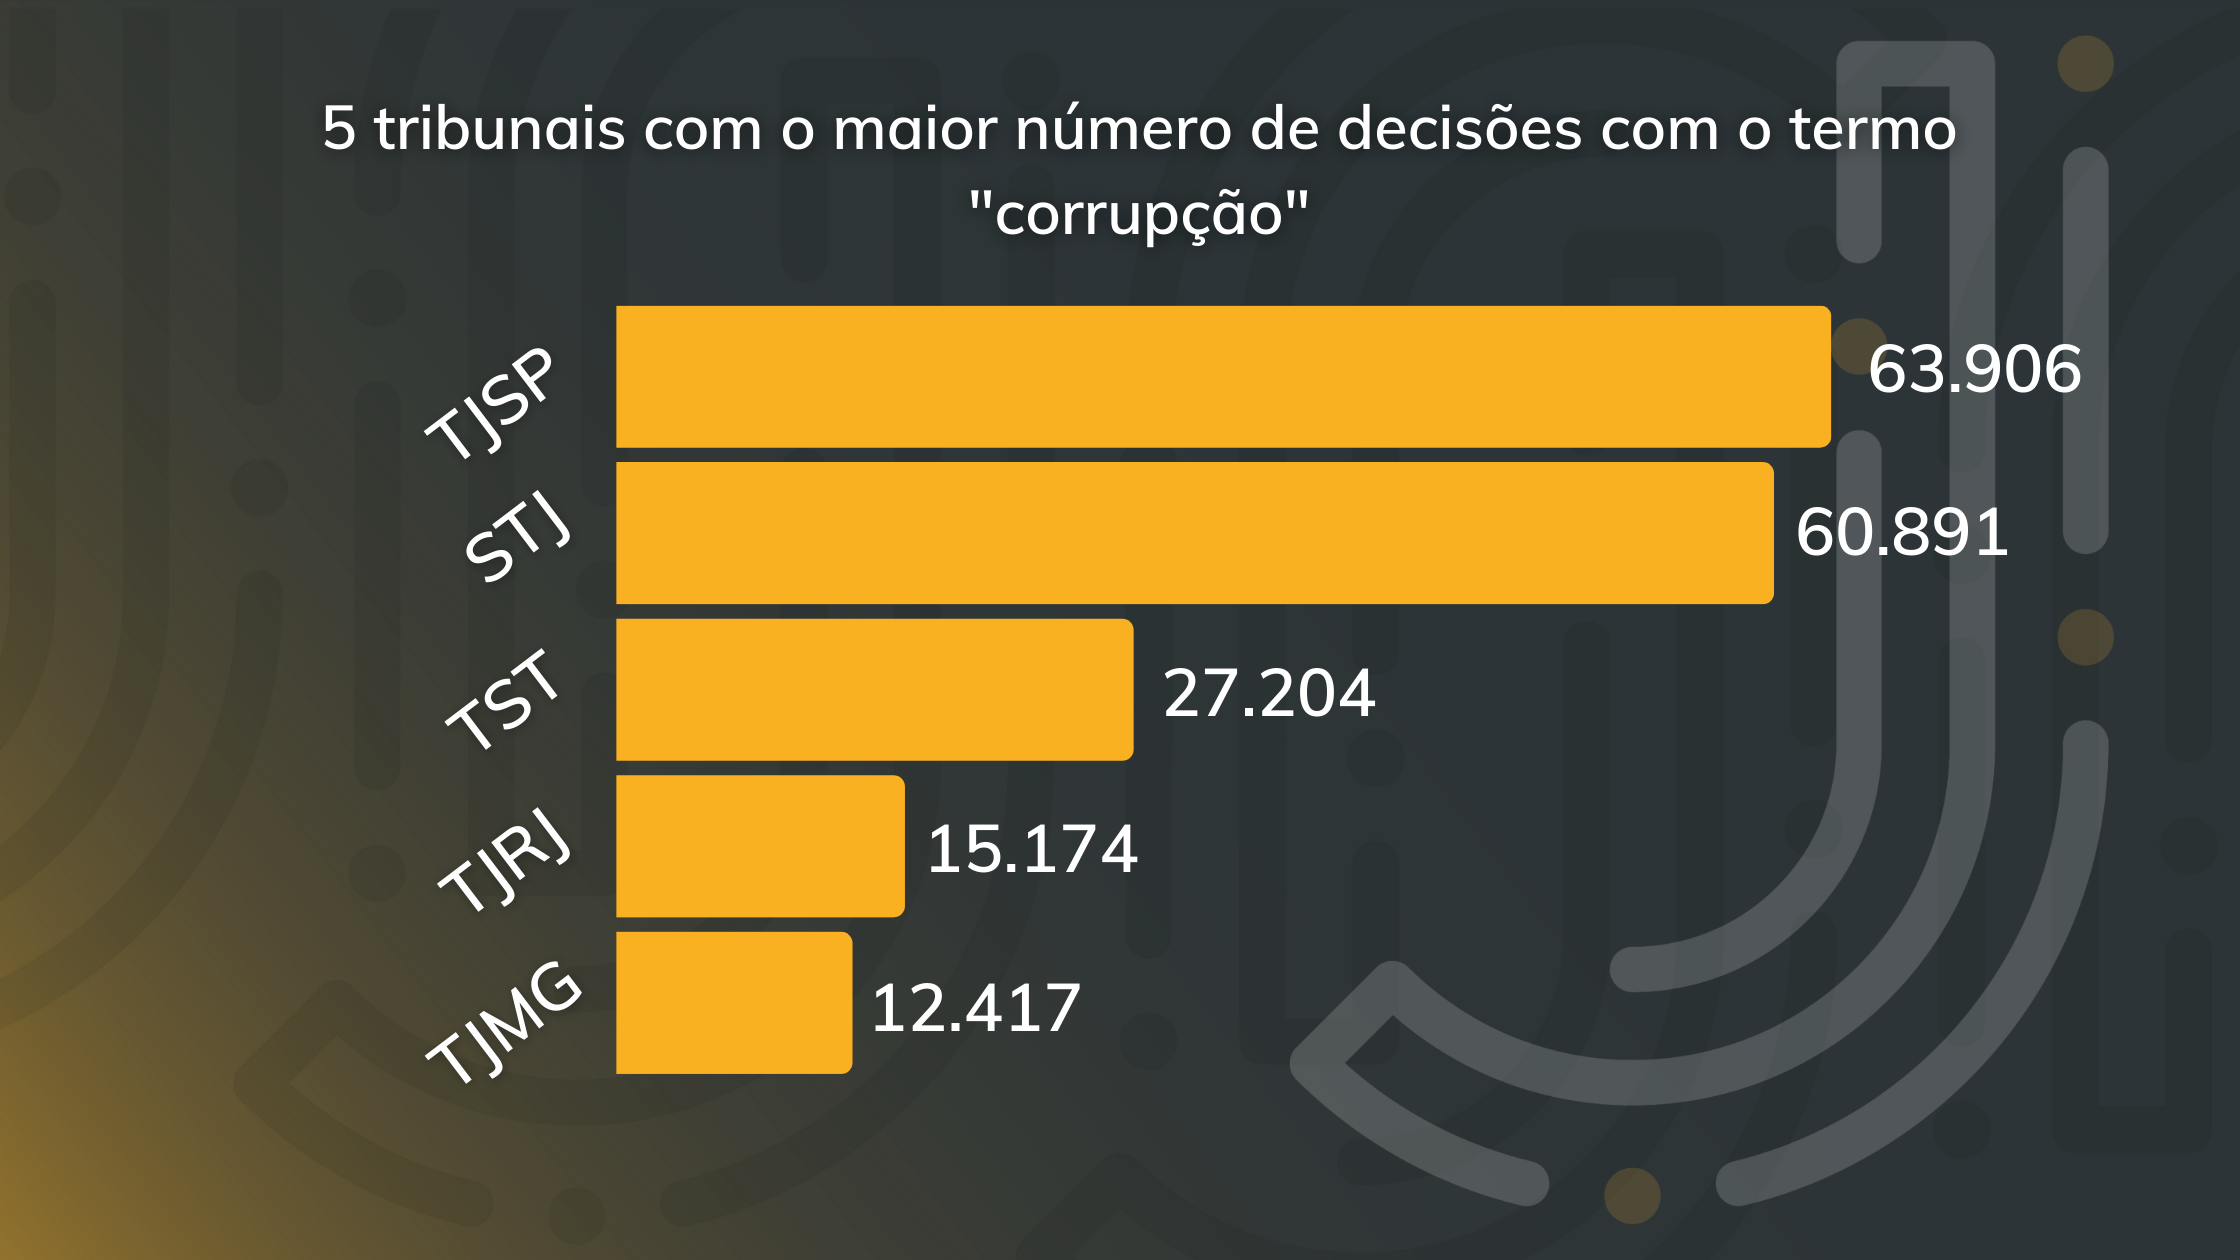 o tribunais com o maior número de decisões com o termo “corrupção”